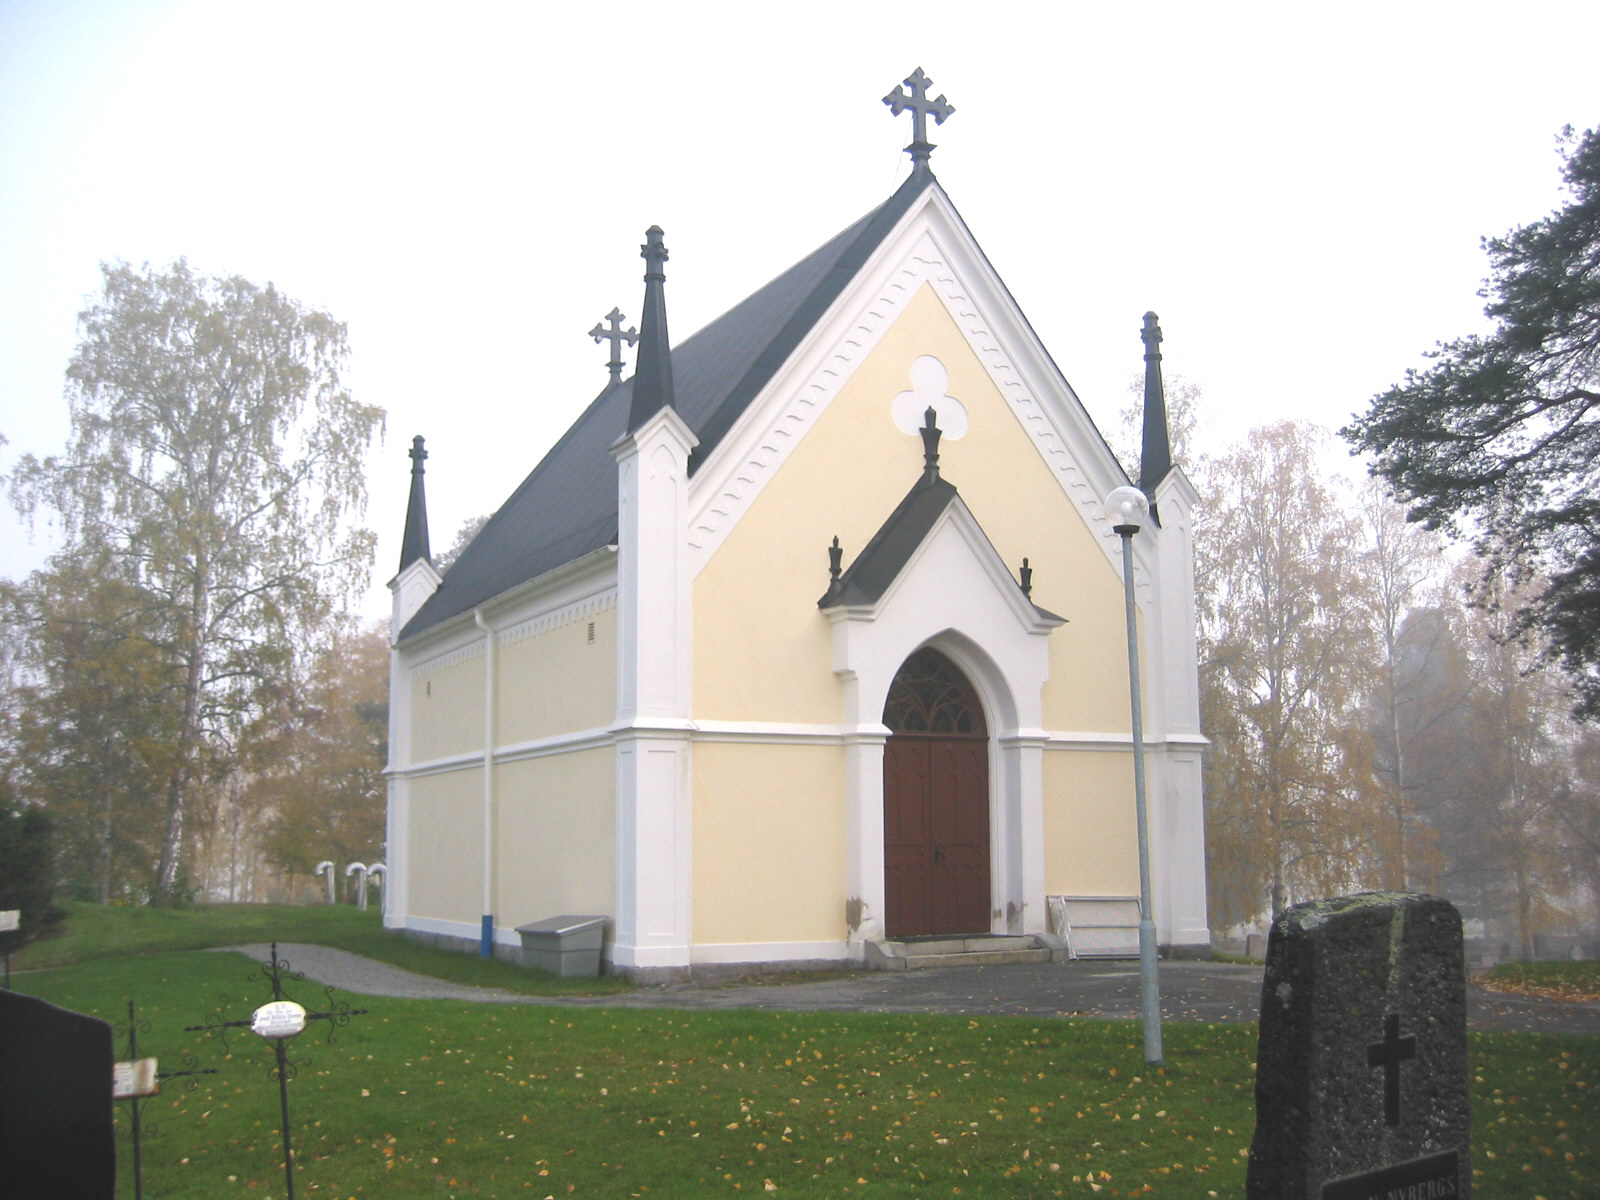 Ytterlännäs nya kyrkas kyrkogård, gravkapellet, vy från nordväst. 

Gravkapellet ligger i östra delen av kyrkogården. Det är ett putsat, goticerat, gravkapell från ca 1880.